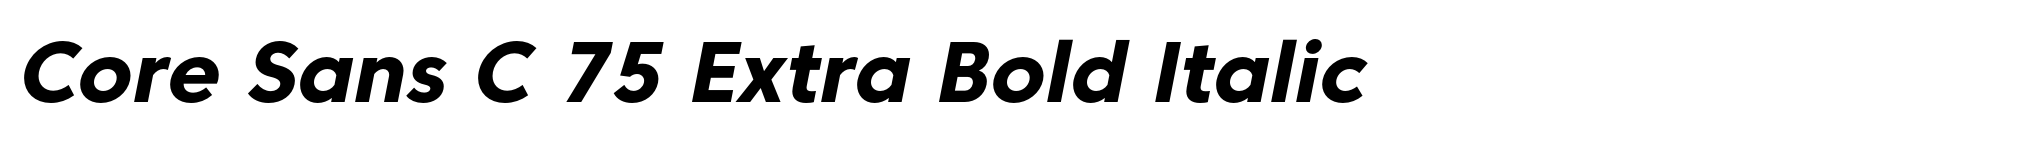 Core Sans C 75 Extra Bold Italic image